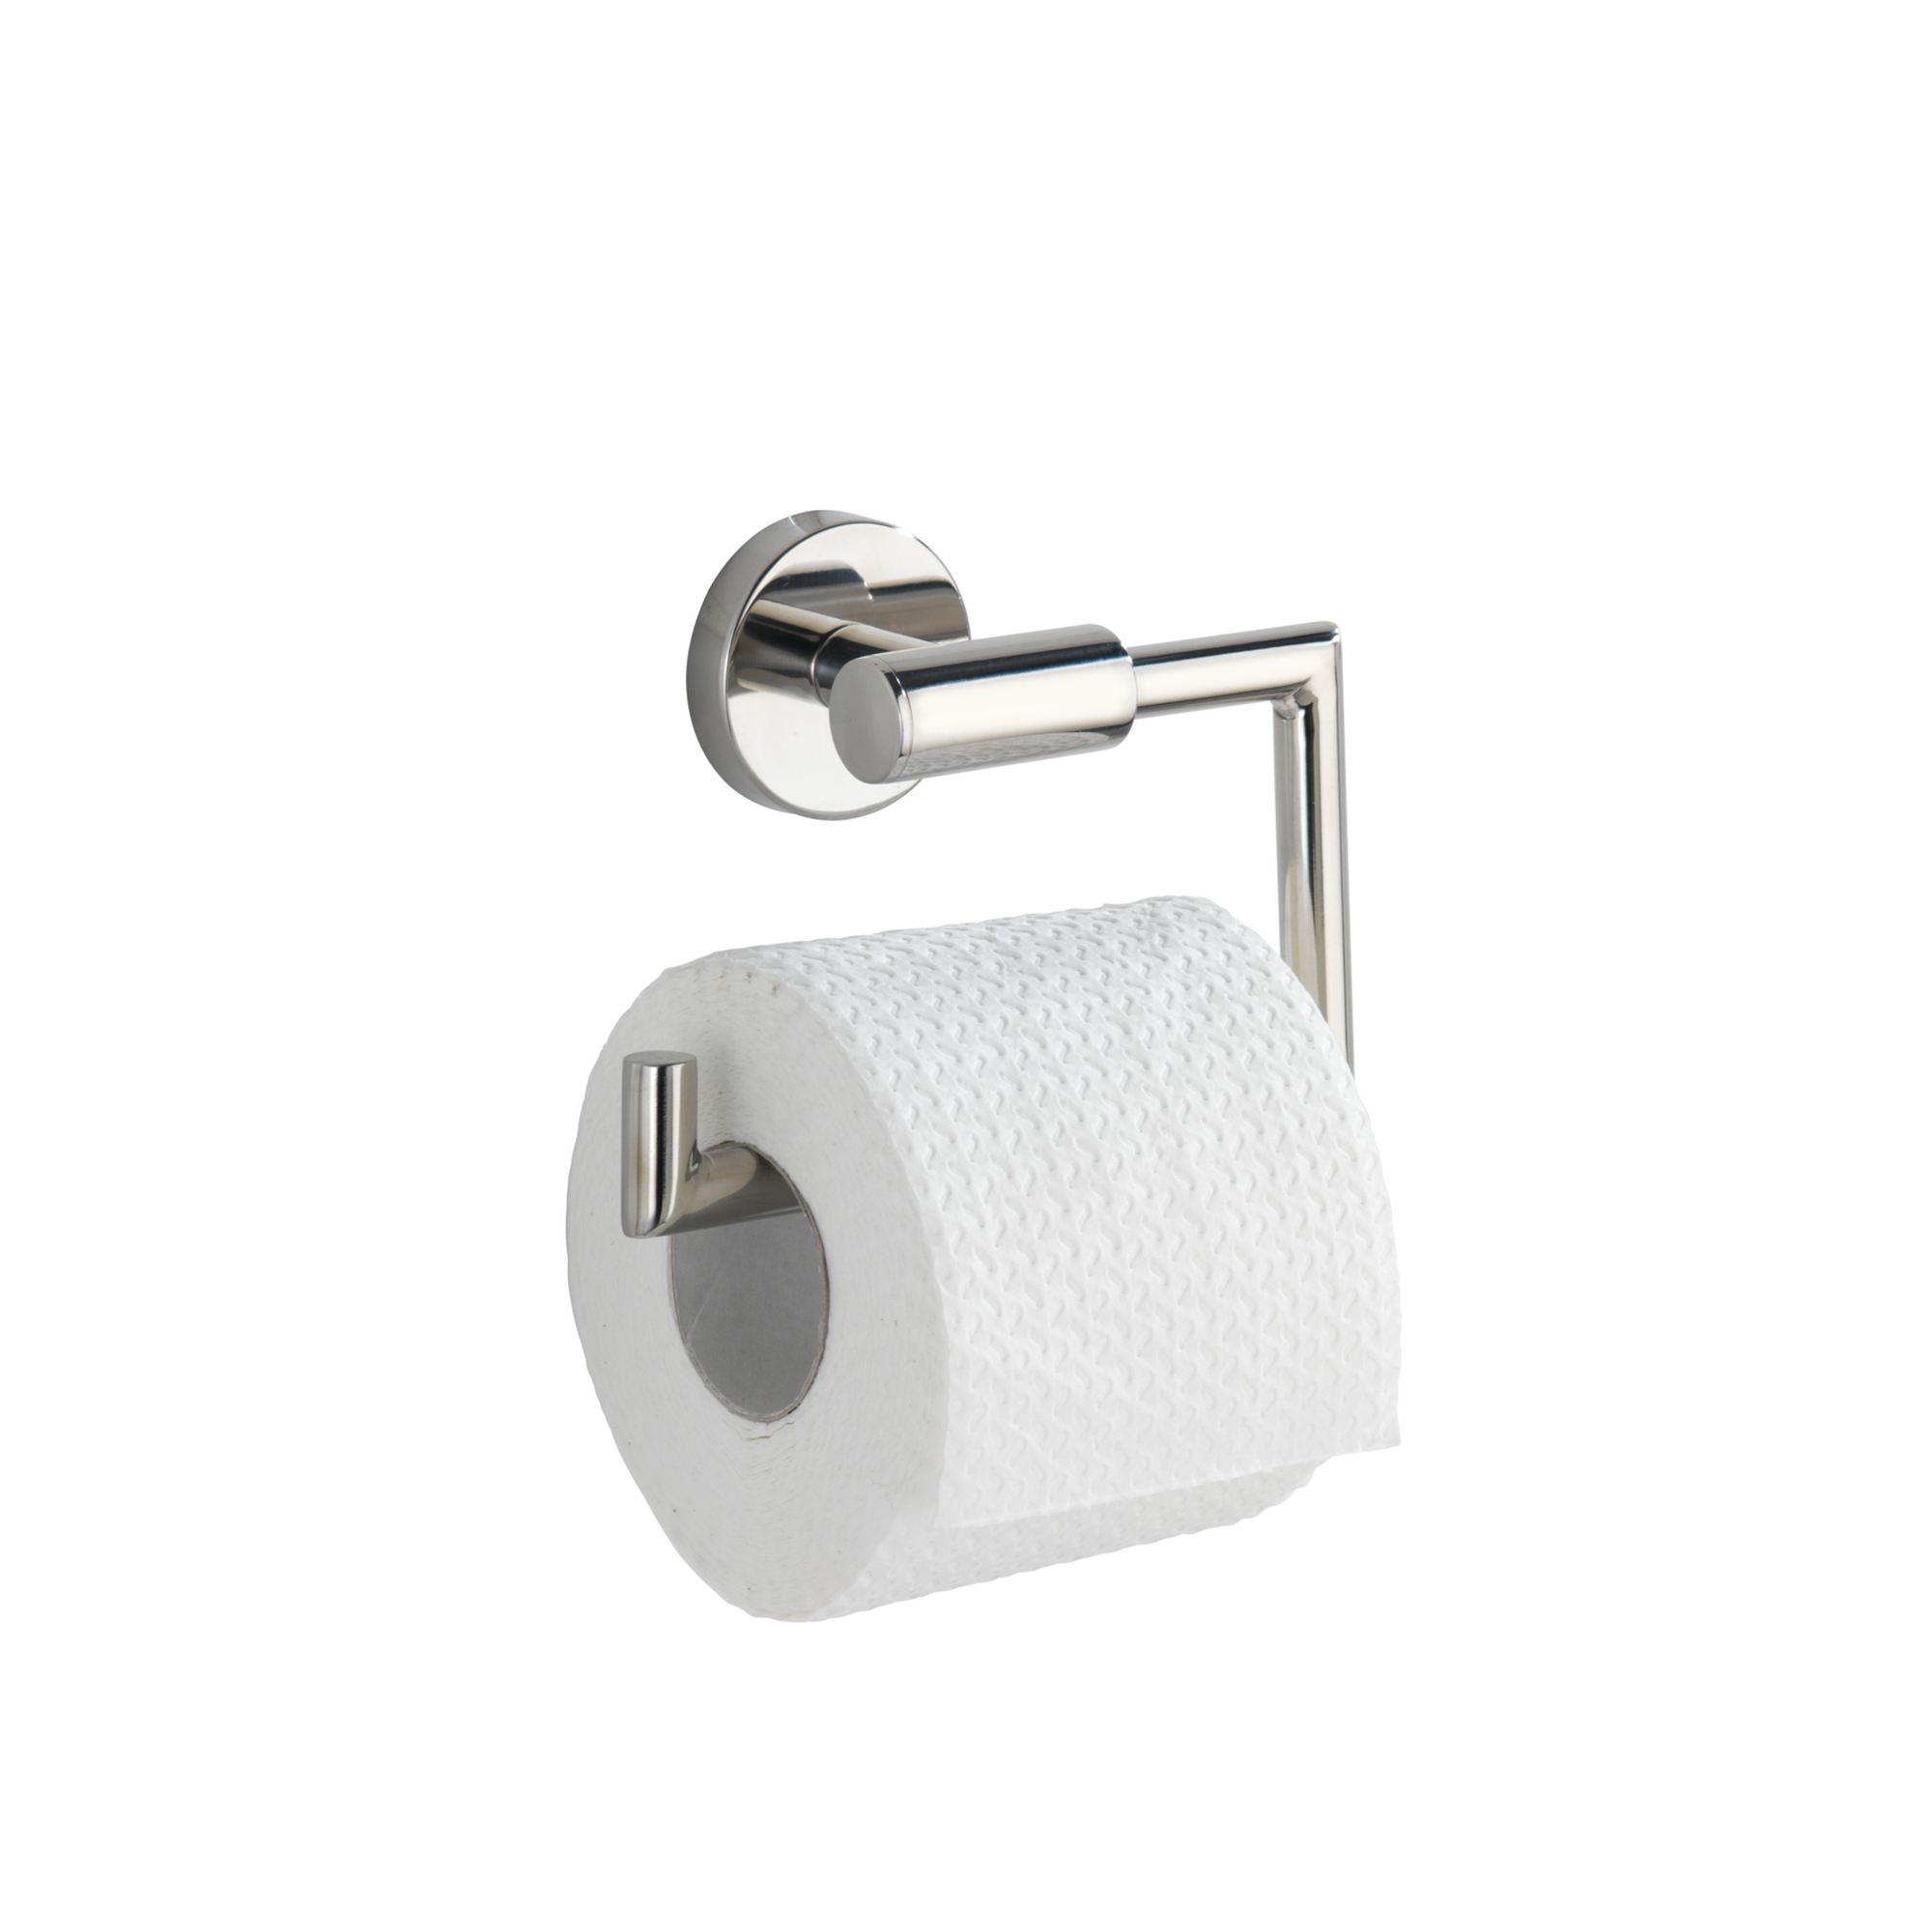 Toilettenpapierhalter 'Bosio Shine' Edelstahl rostfrei, glänzend + product picture